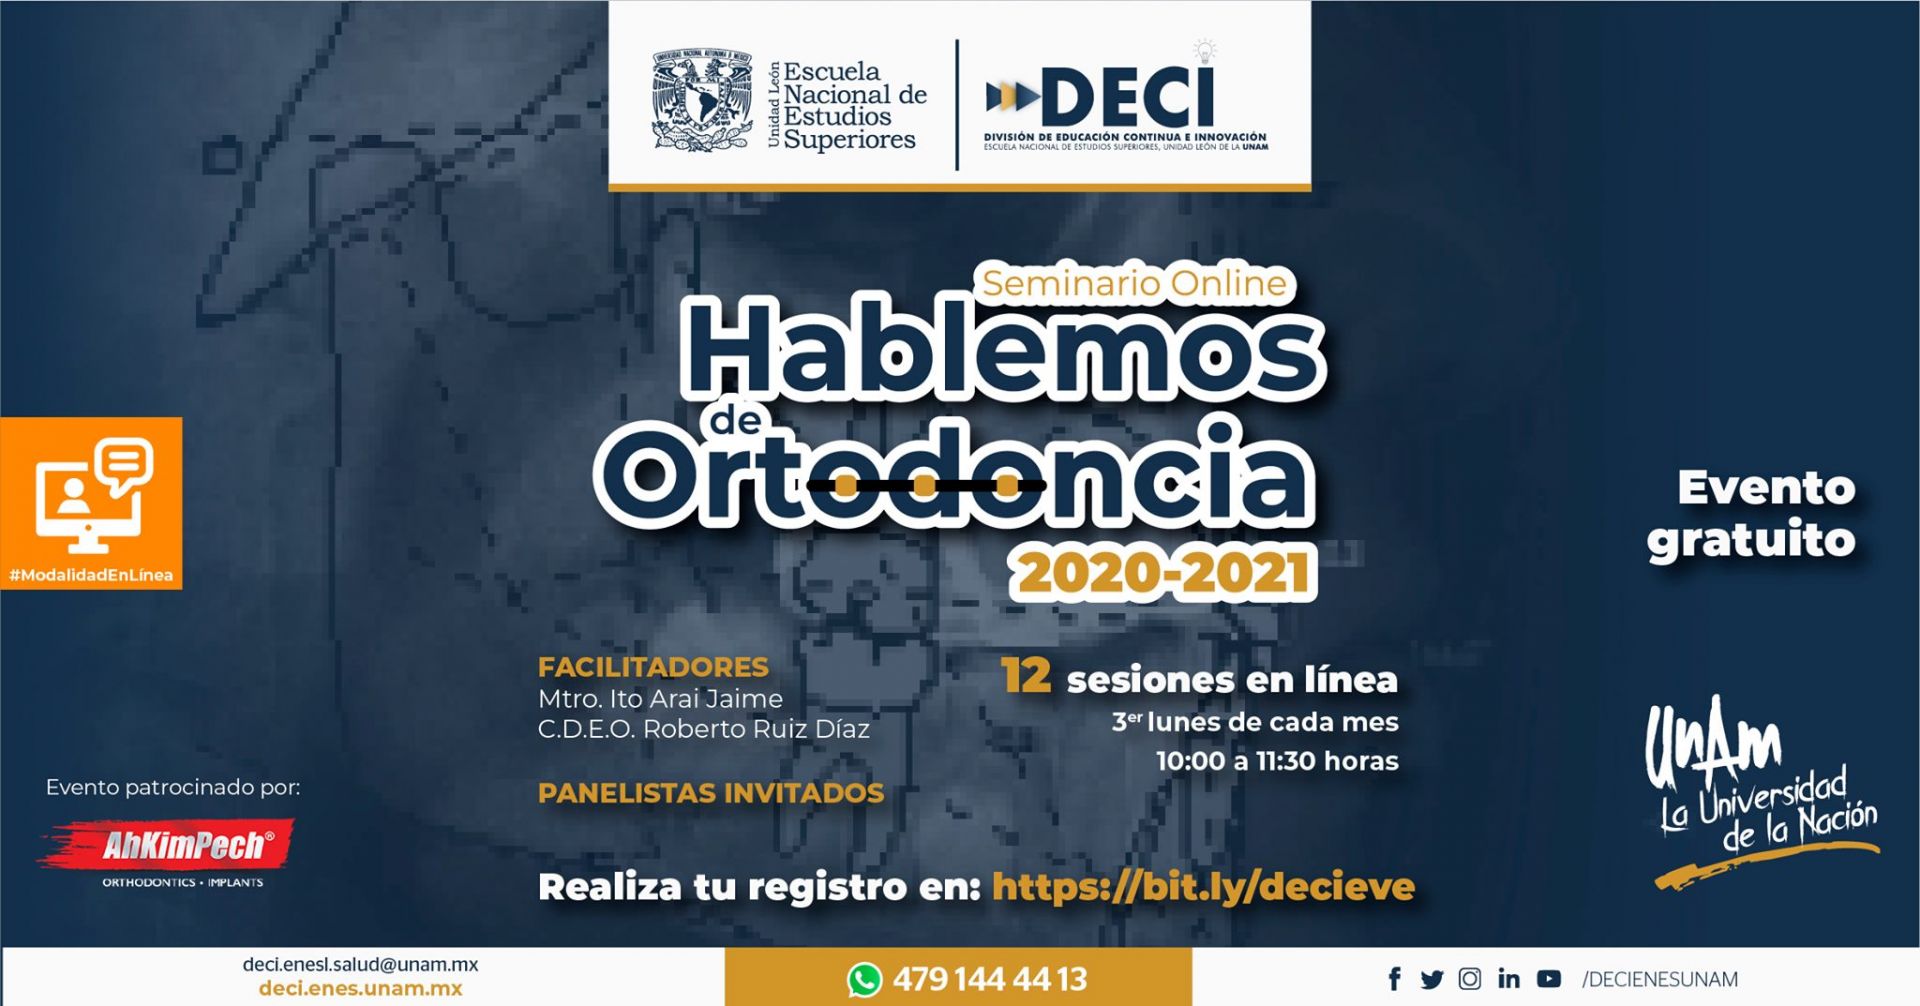 Seminario Online: Hablemos de Ortodoncia